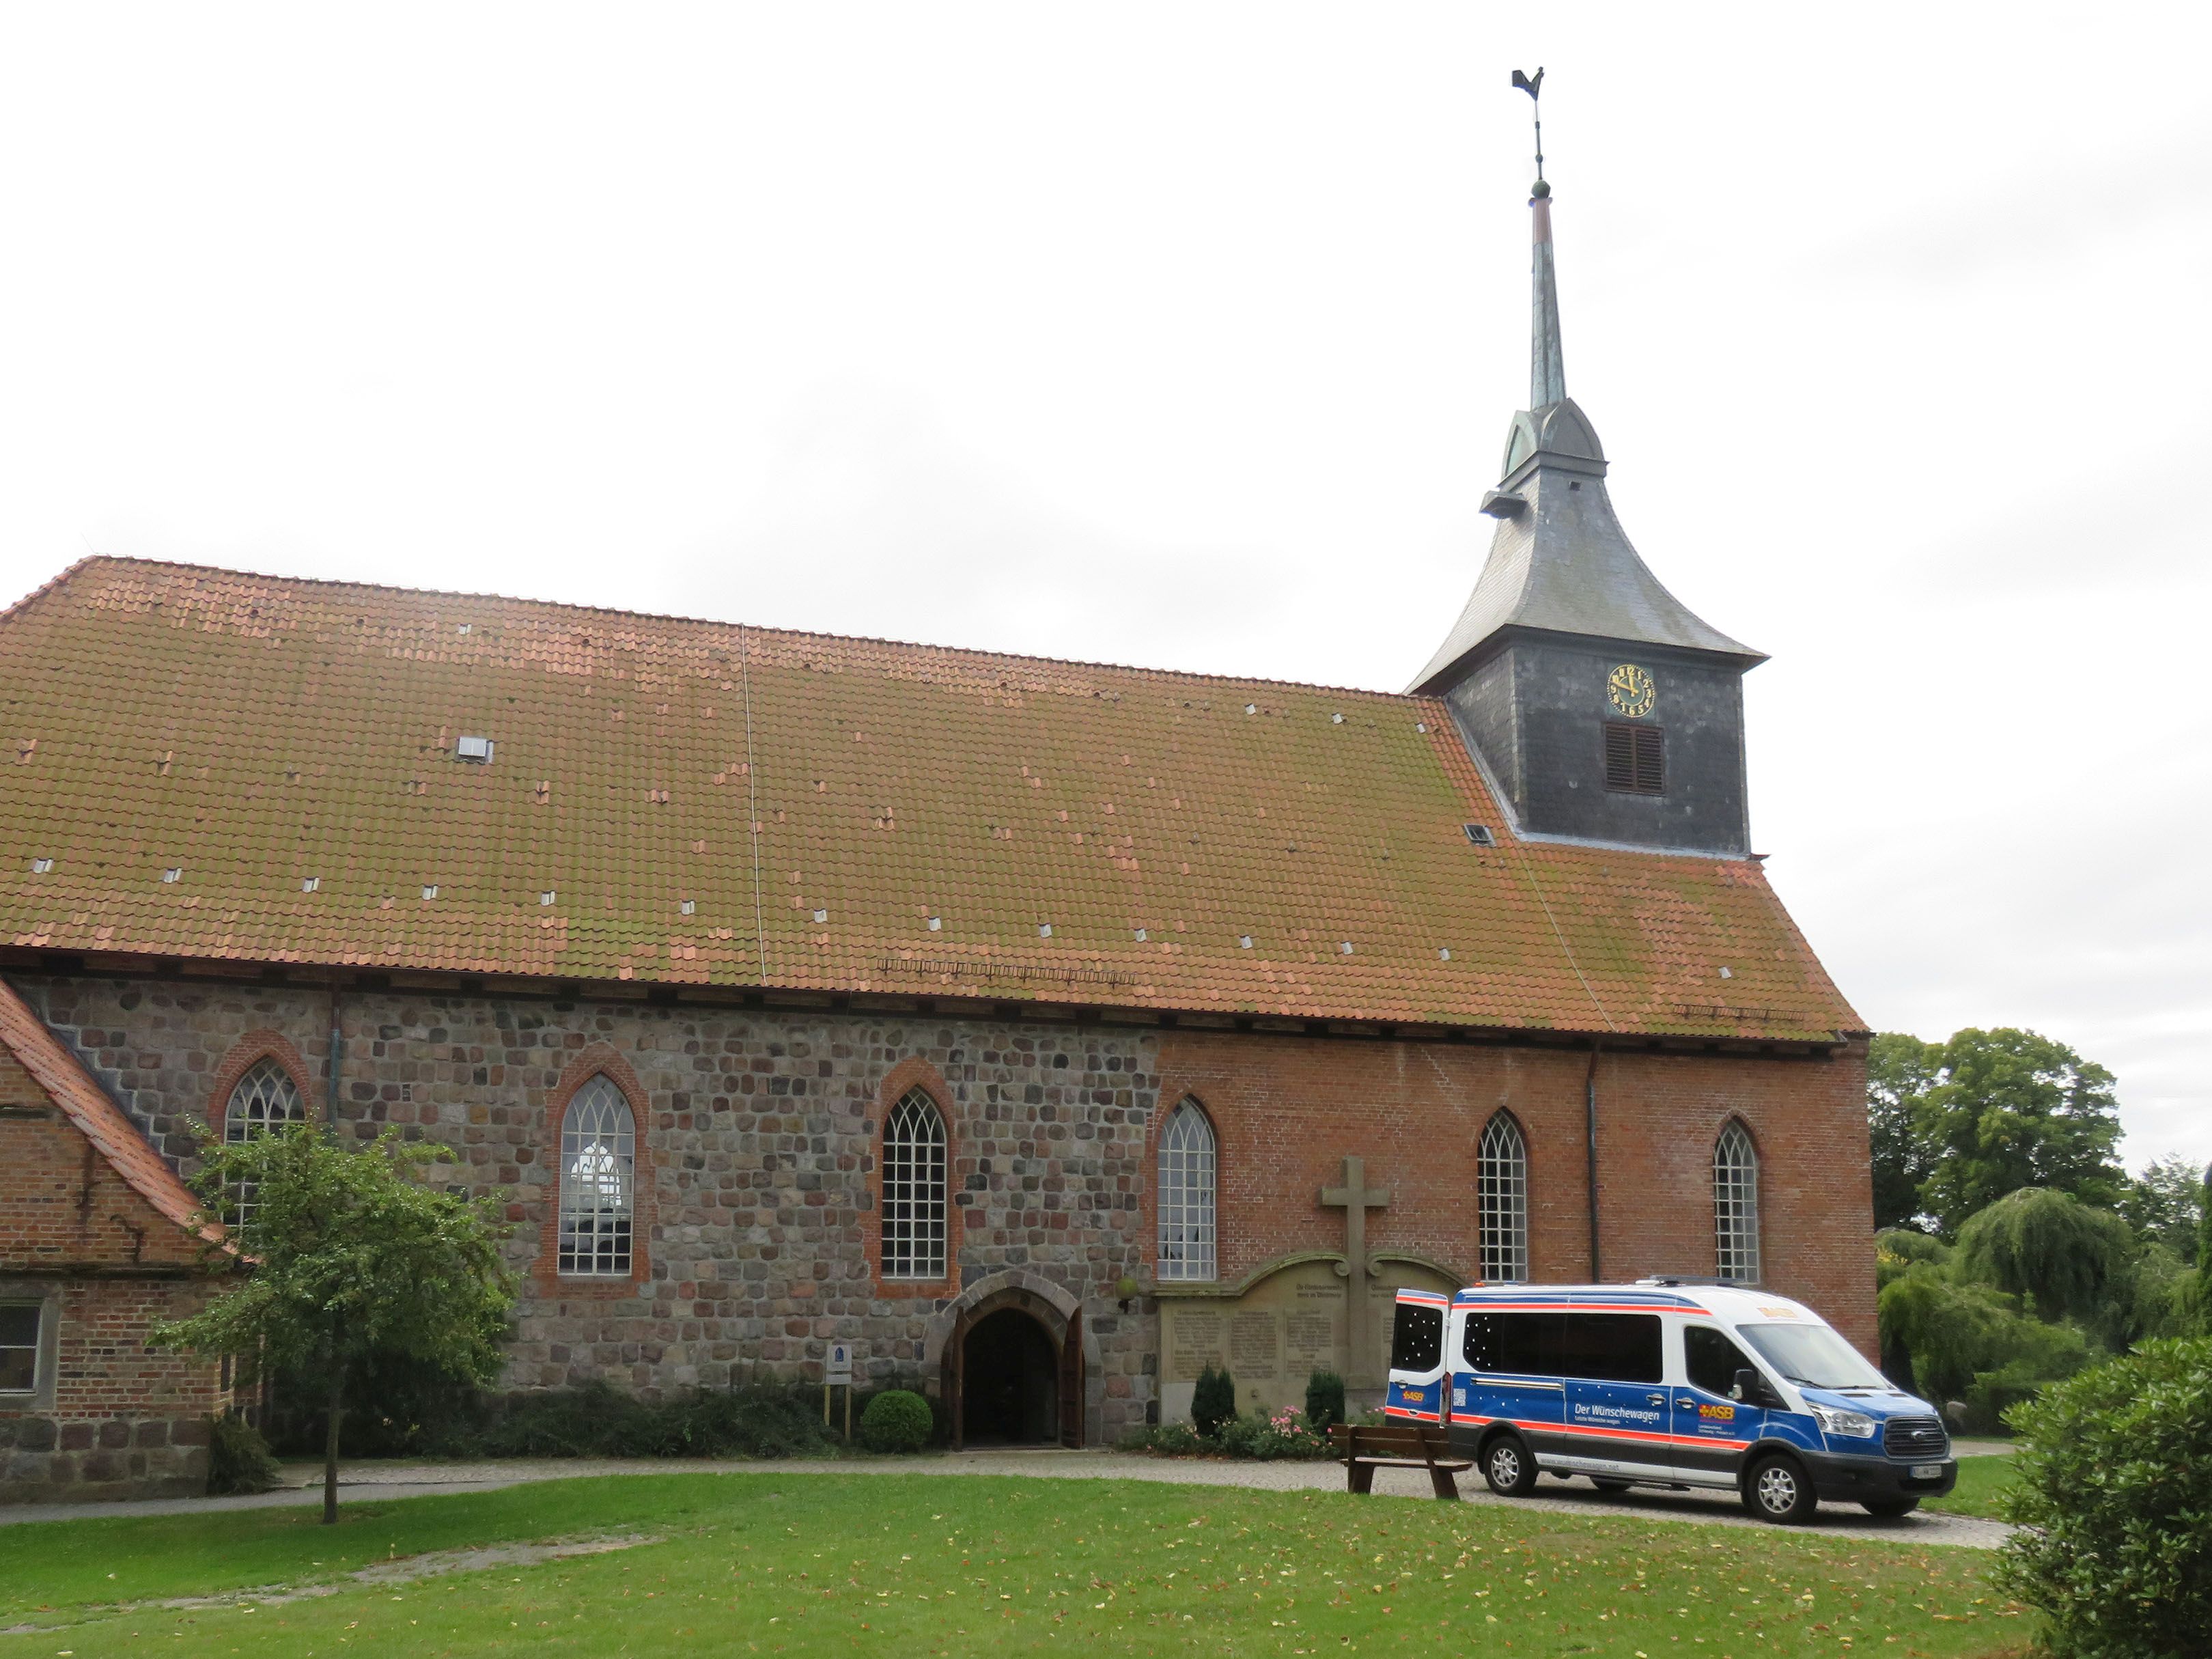 Wünschewagen-SChleswig-Holstein-Kirche-Letzte-Wünsche-wagen-1.jpg